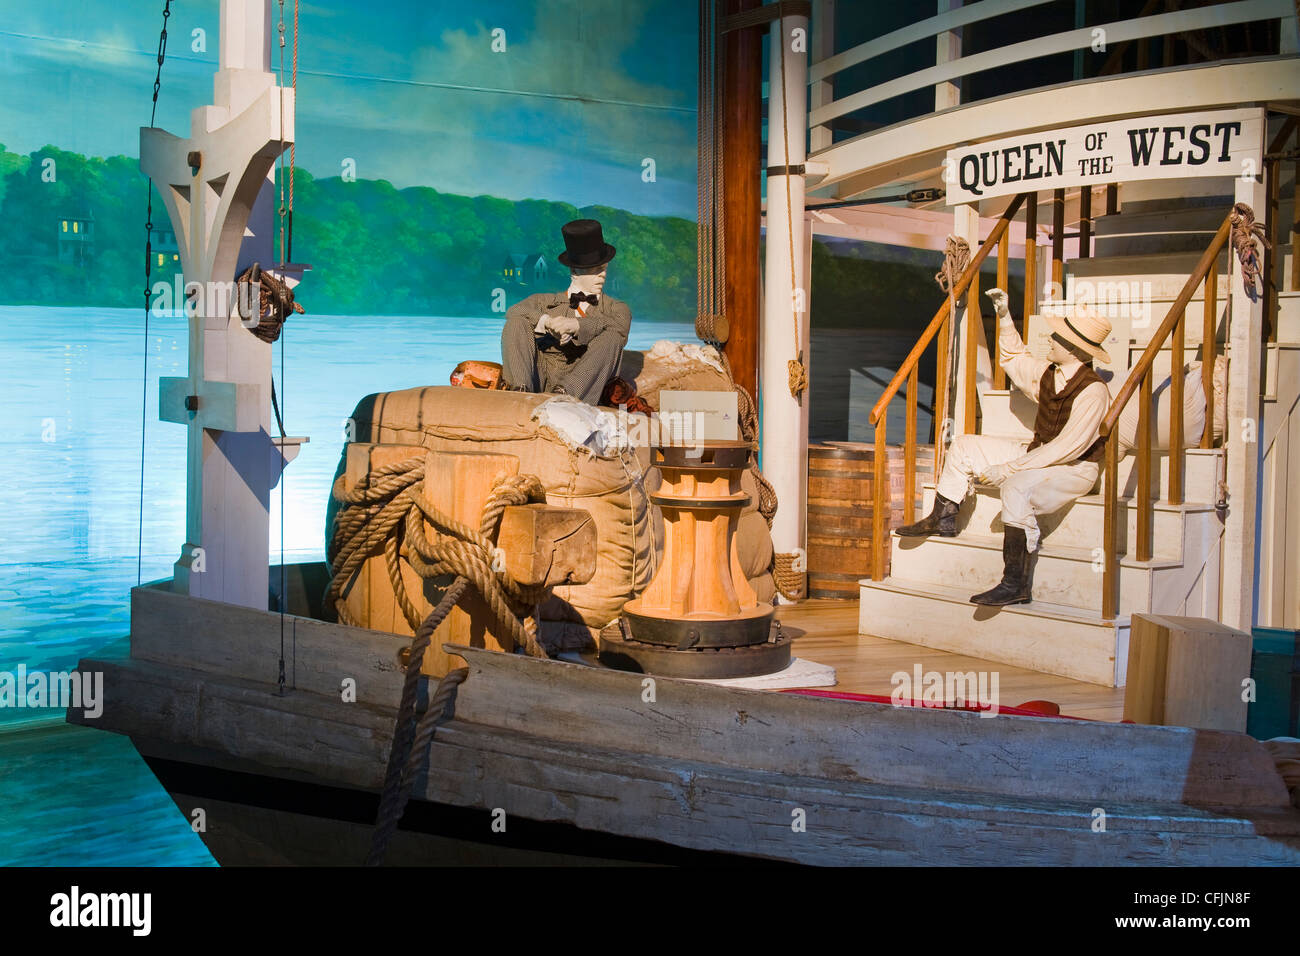 Steamboat la pièce dans l'histoire Museuml, Cincinnati, Ohio, États-Unis d'Amérique, Amérique du Nord Banque D'Images